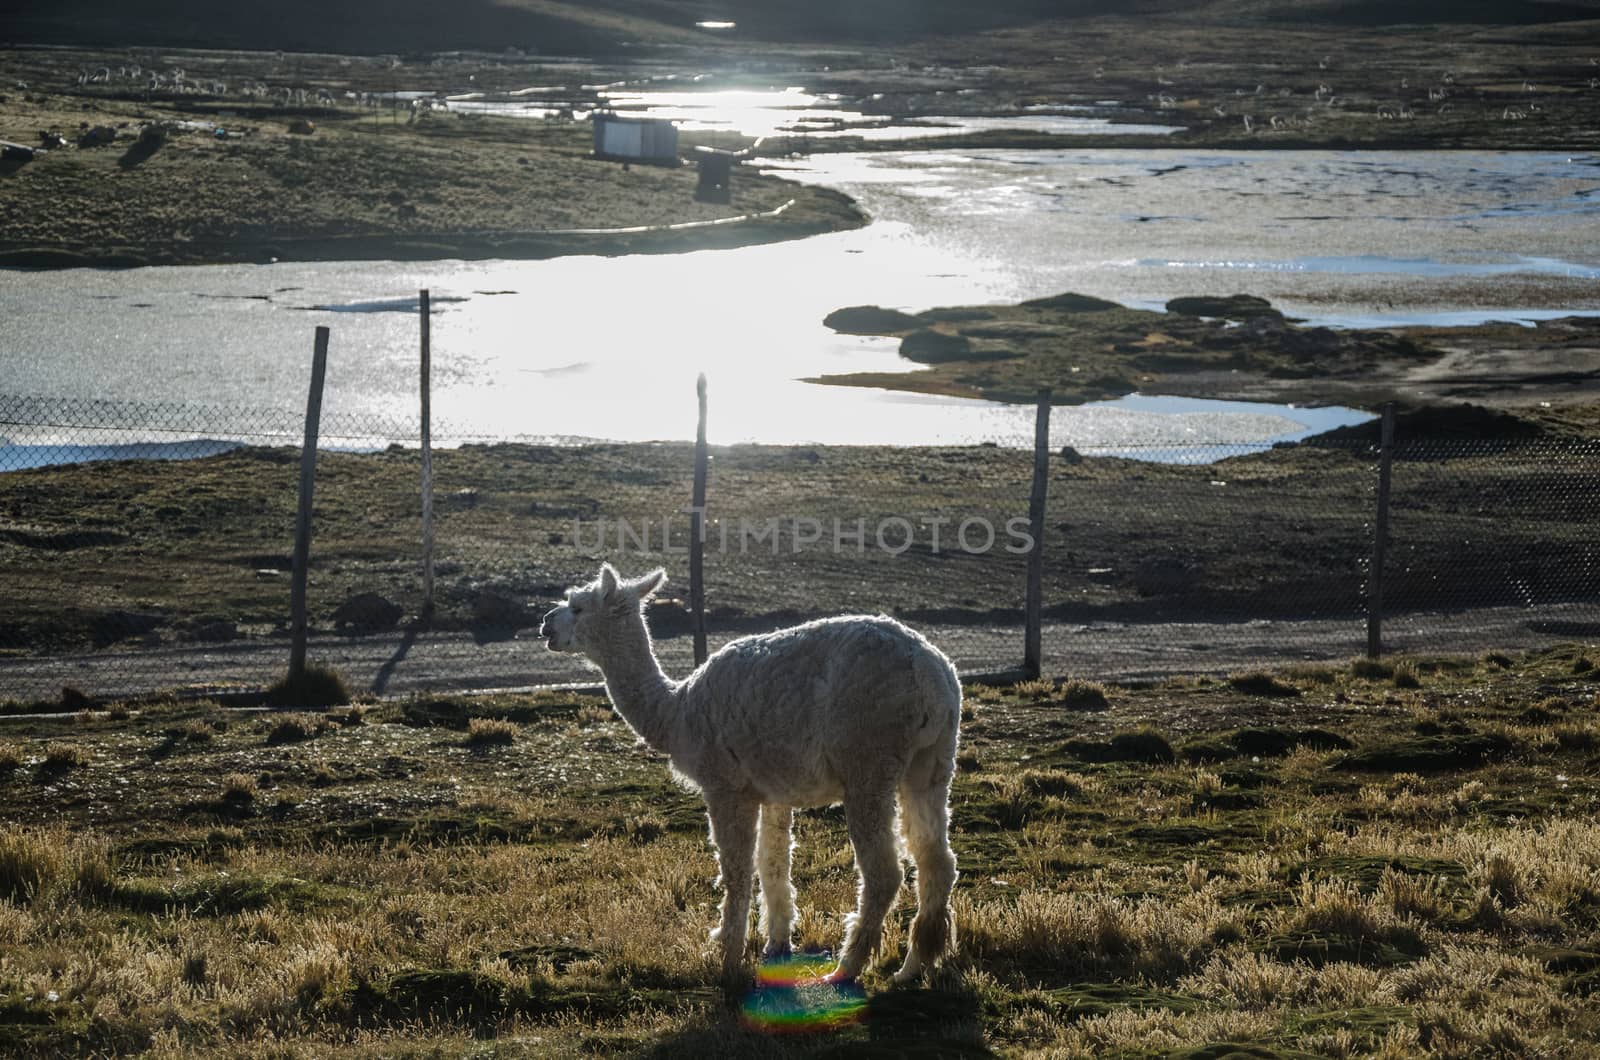 Llama by Peruphotoart